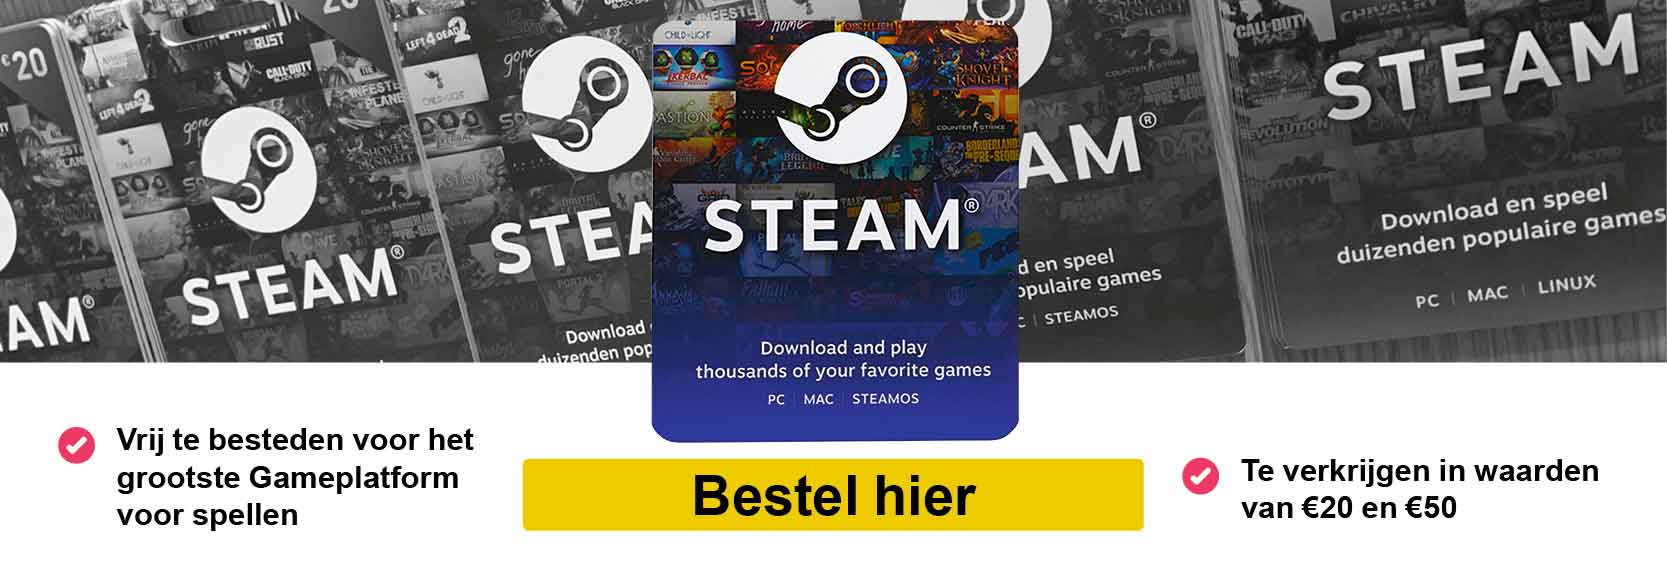 reservering onkruid Prematuur Steam Cadeaukaarten | Cadeaubonnen van Steam Giftcard | Steamcard